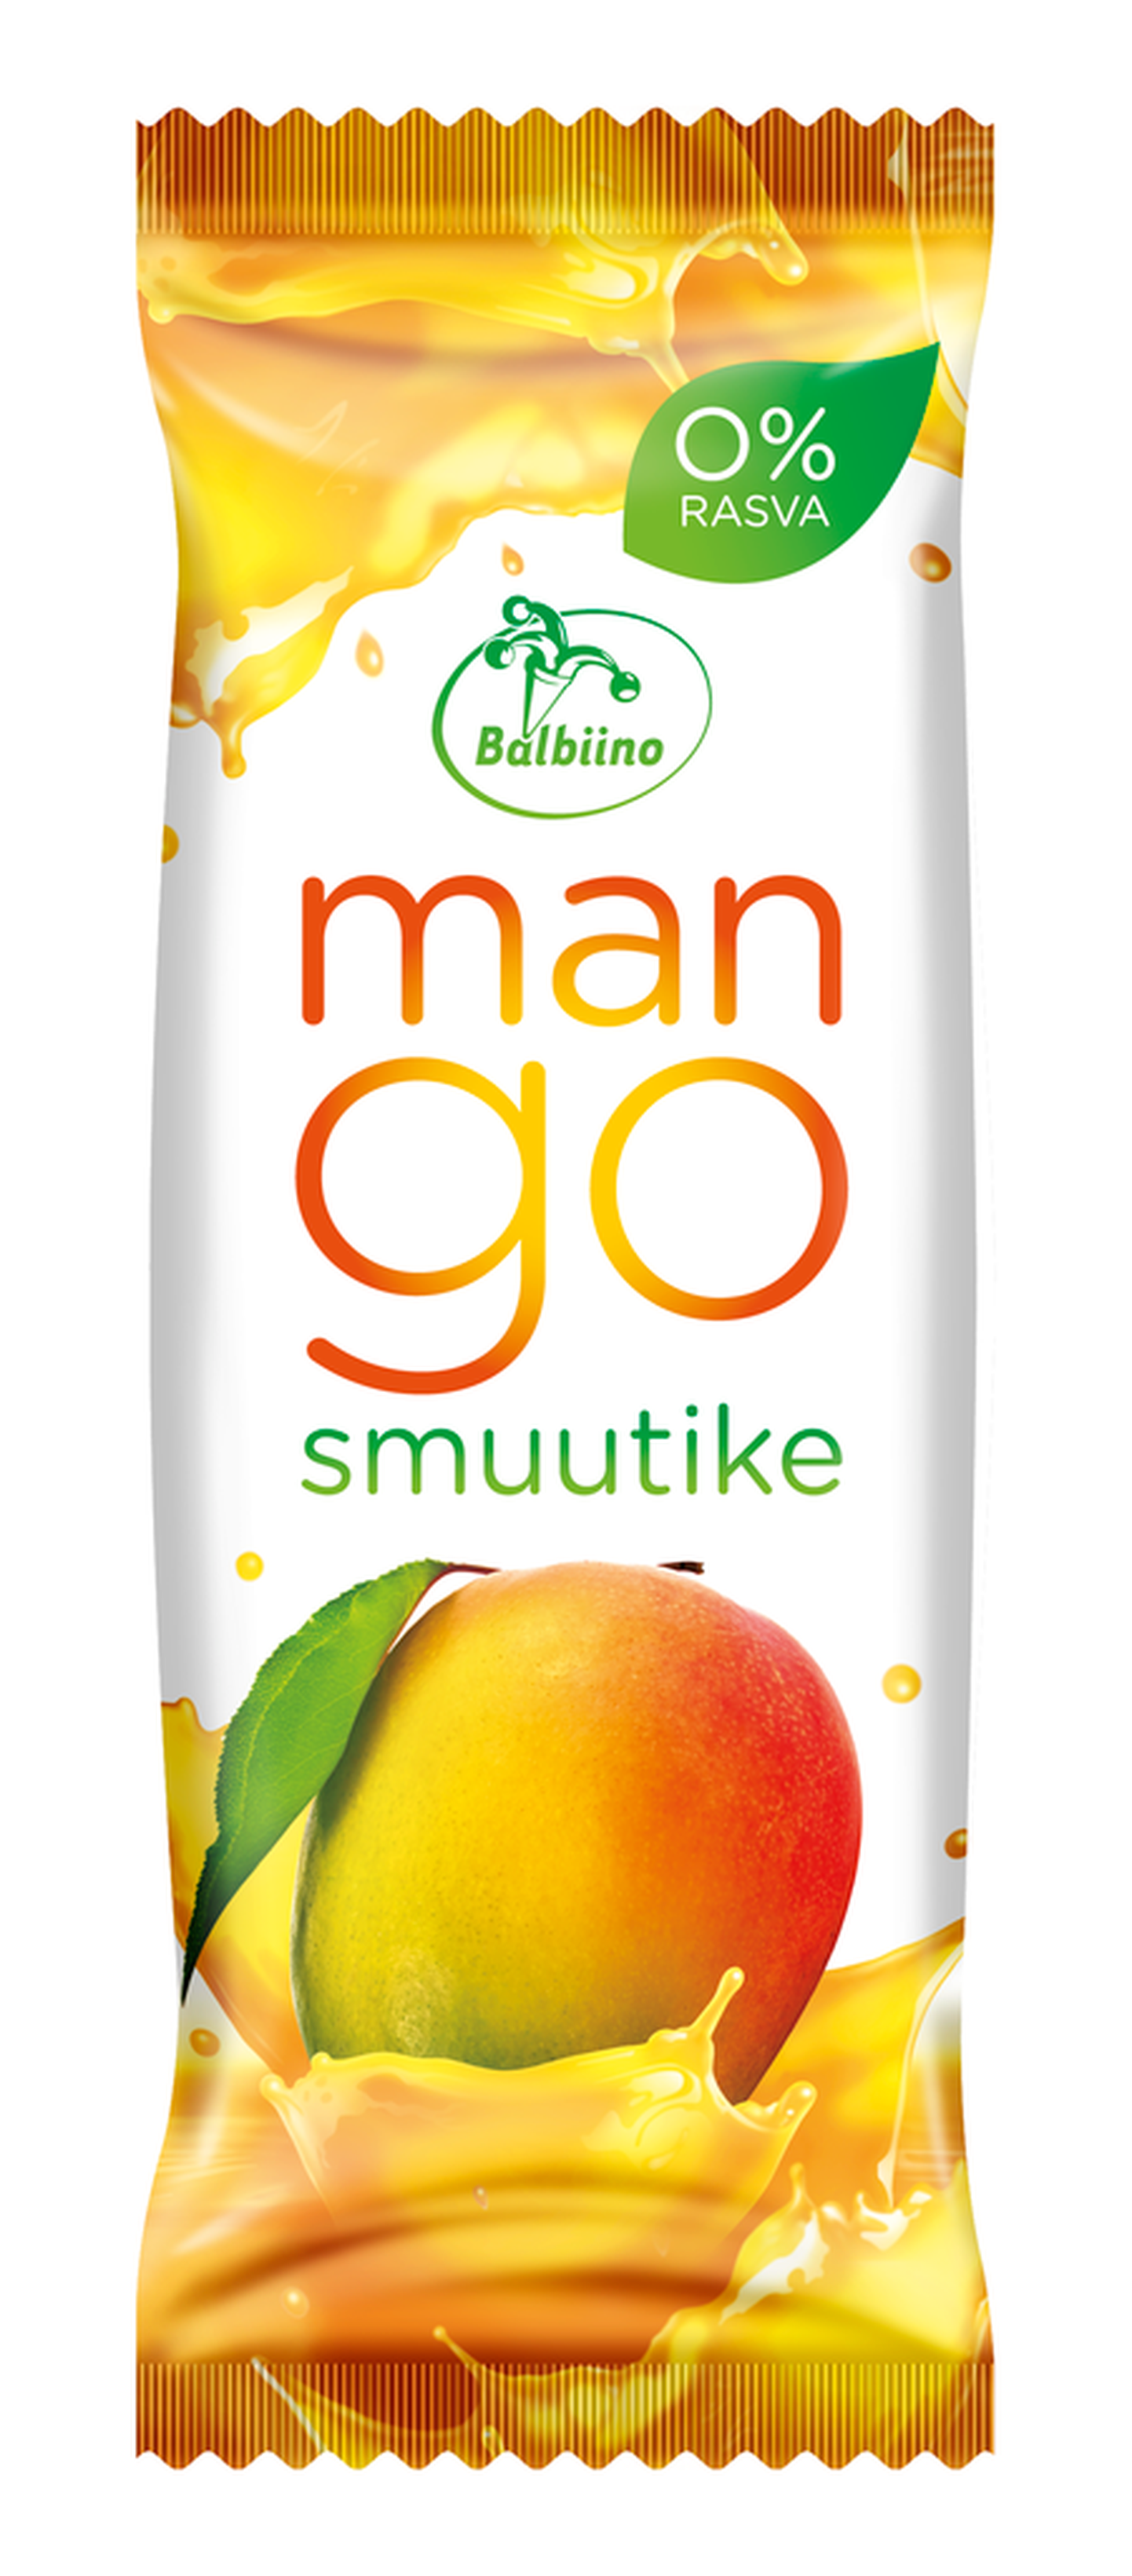 Mango Smuutike.